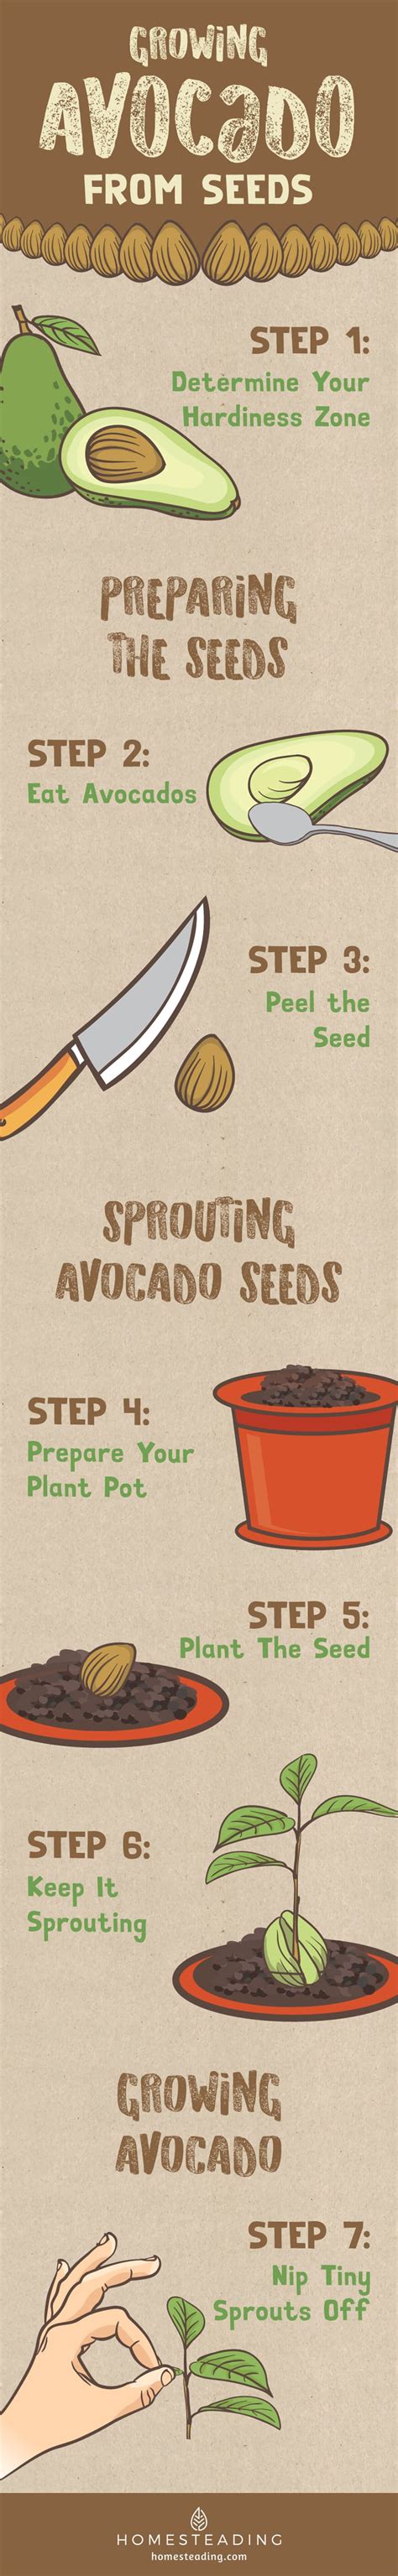 Growing Avocado From Seeds Garden Season Guide